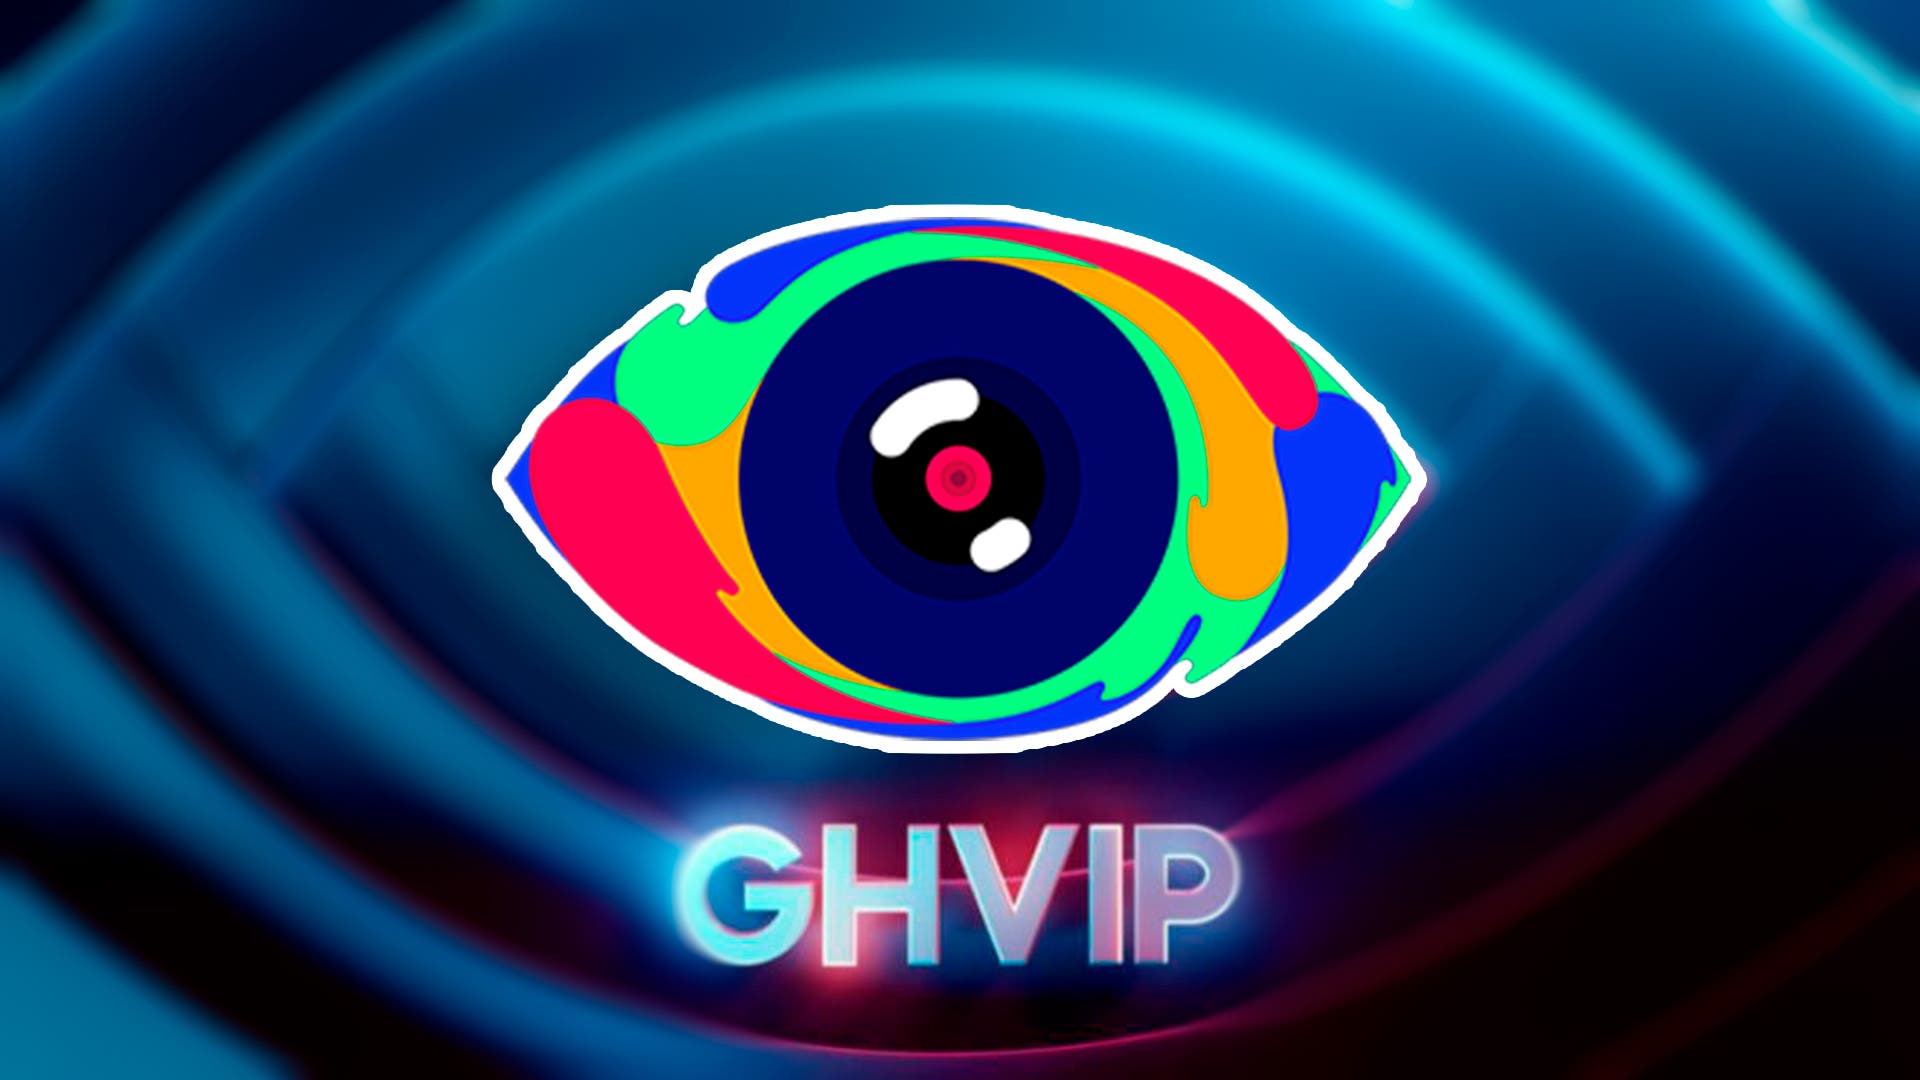 Laura Bozzo, la polémica presentadora peruana, será concursante de 'GH VIP  8' tras 'La casa de los famosos' - FormulaTV